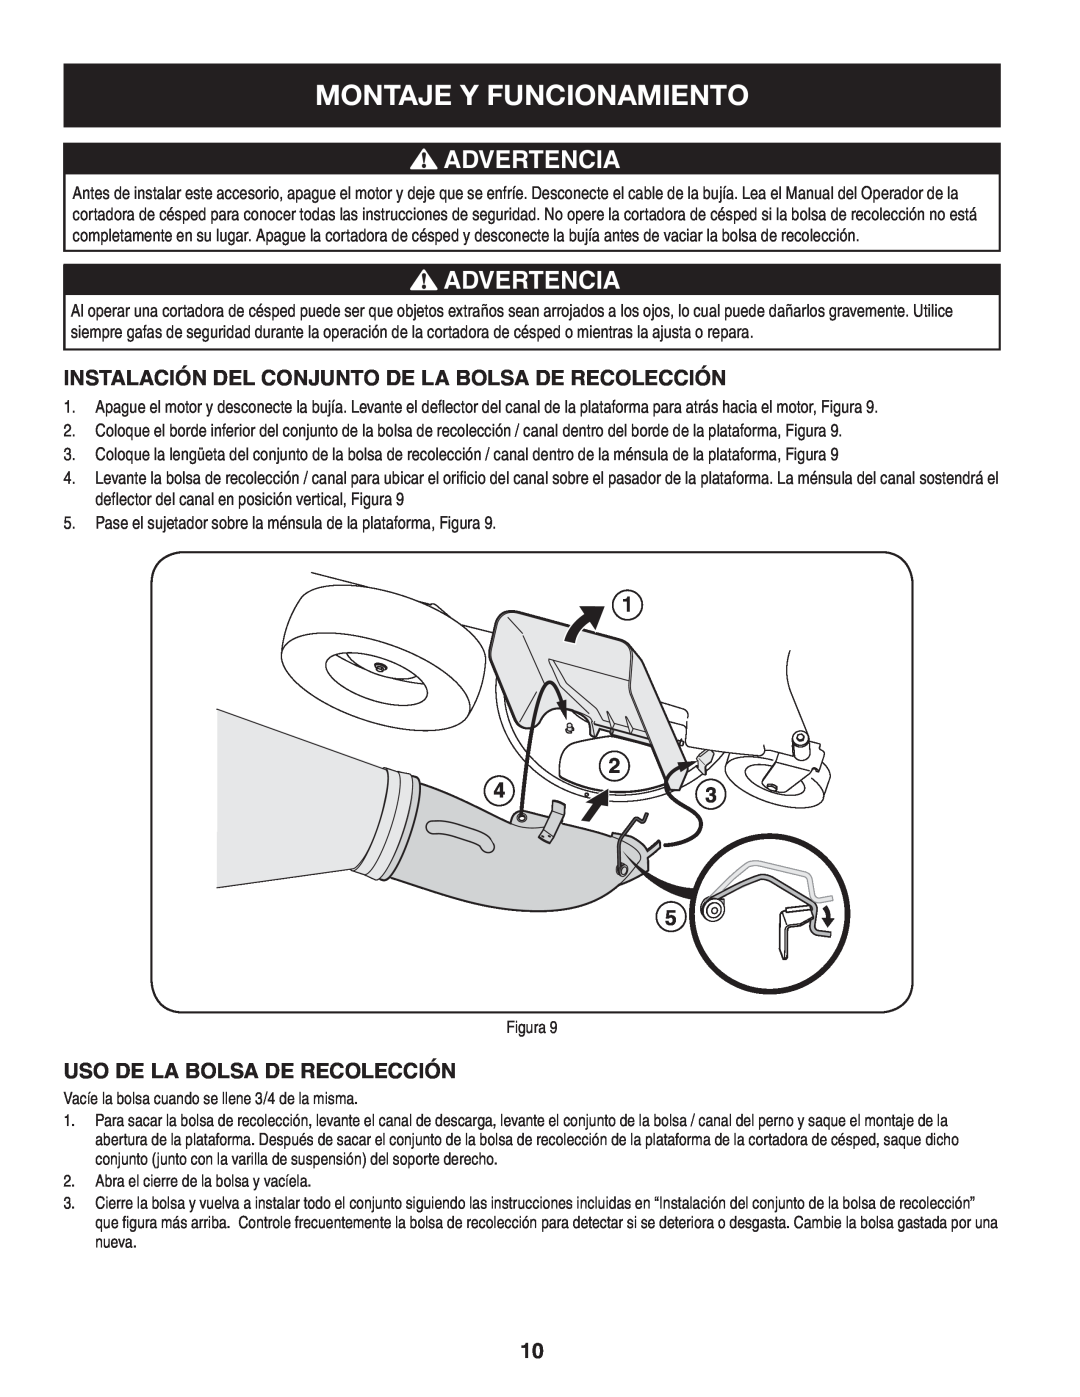 Sears 33731 manual Montaje Y Funcionamiento, Advertencia, 1 2 43, Uso De La Bolsa De Recolección 